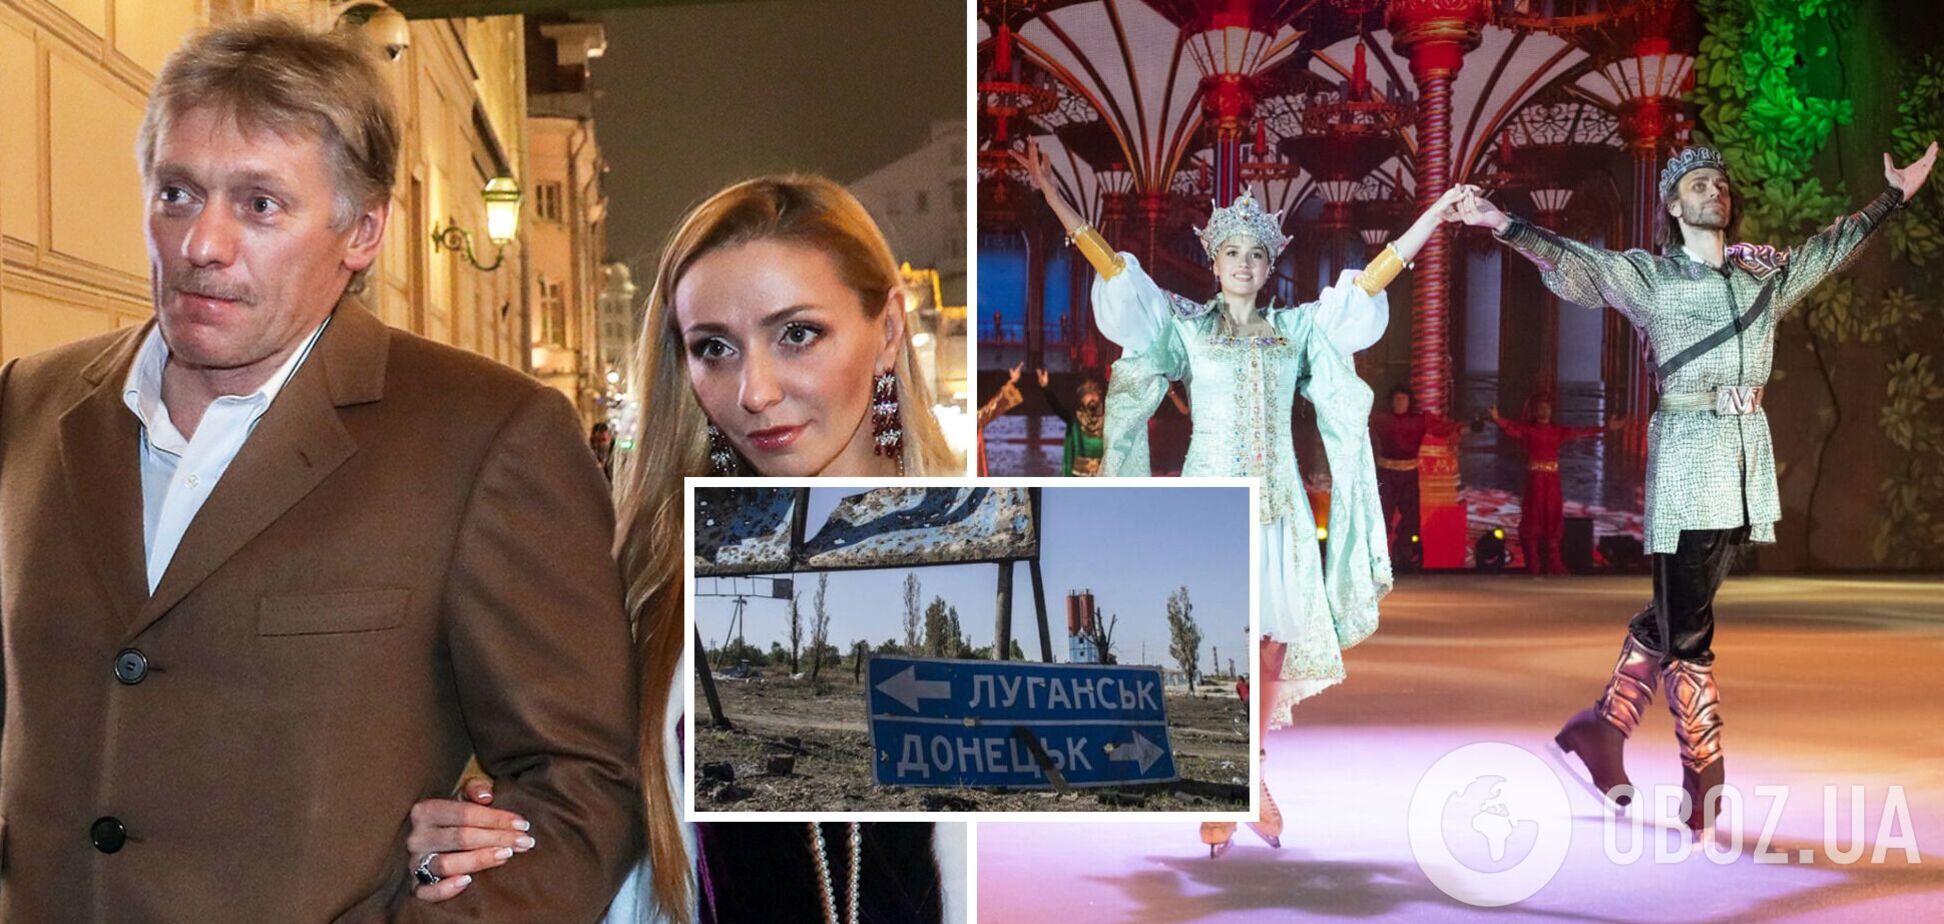 Жена Пескова пожаловалась на 'весь этот ужас в Луганске', из-за которого ее 'кинули' в России, и получила ответку в сети 